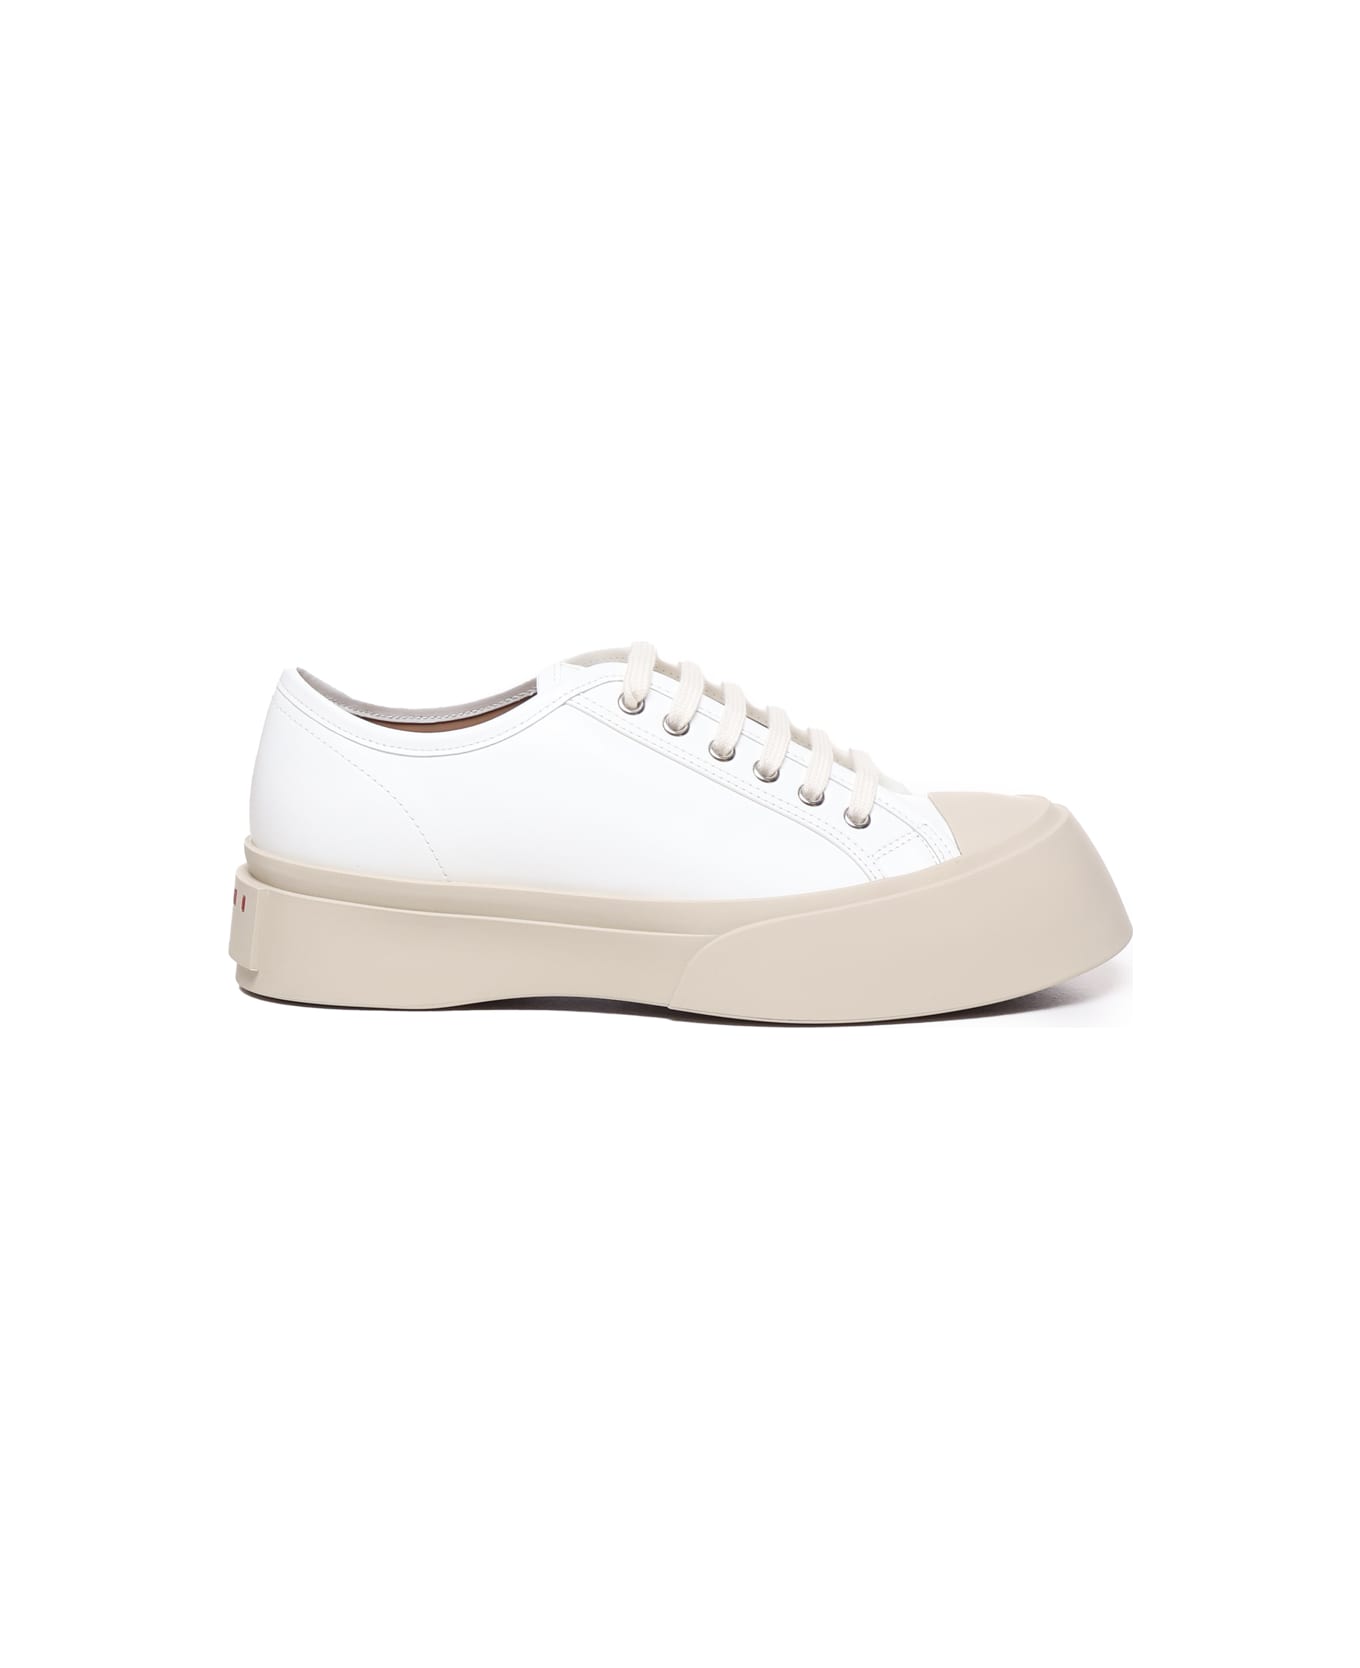 Marni Pablo Sneaker In Nappa Leather - White